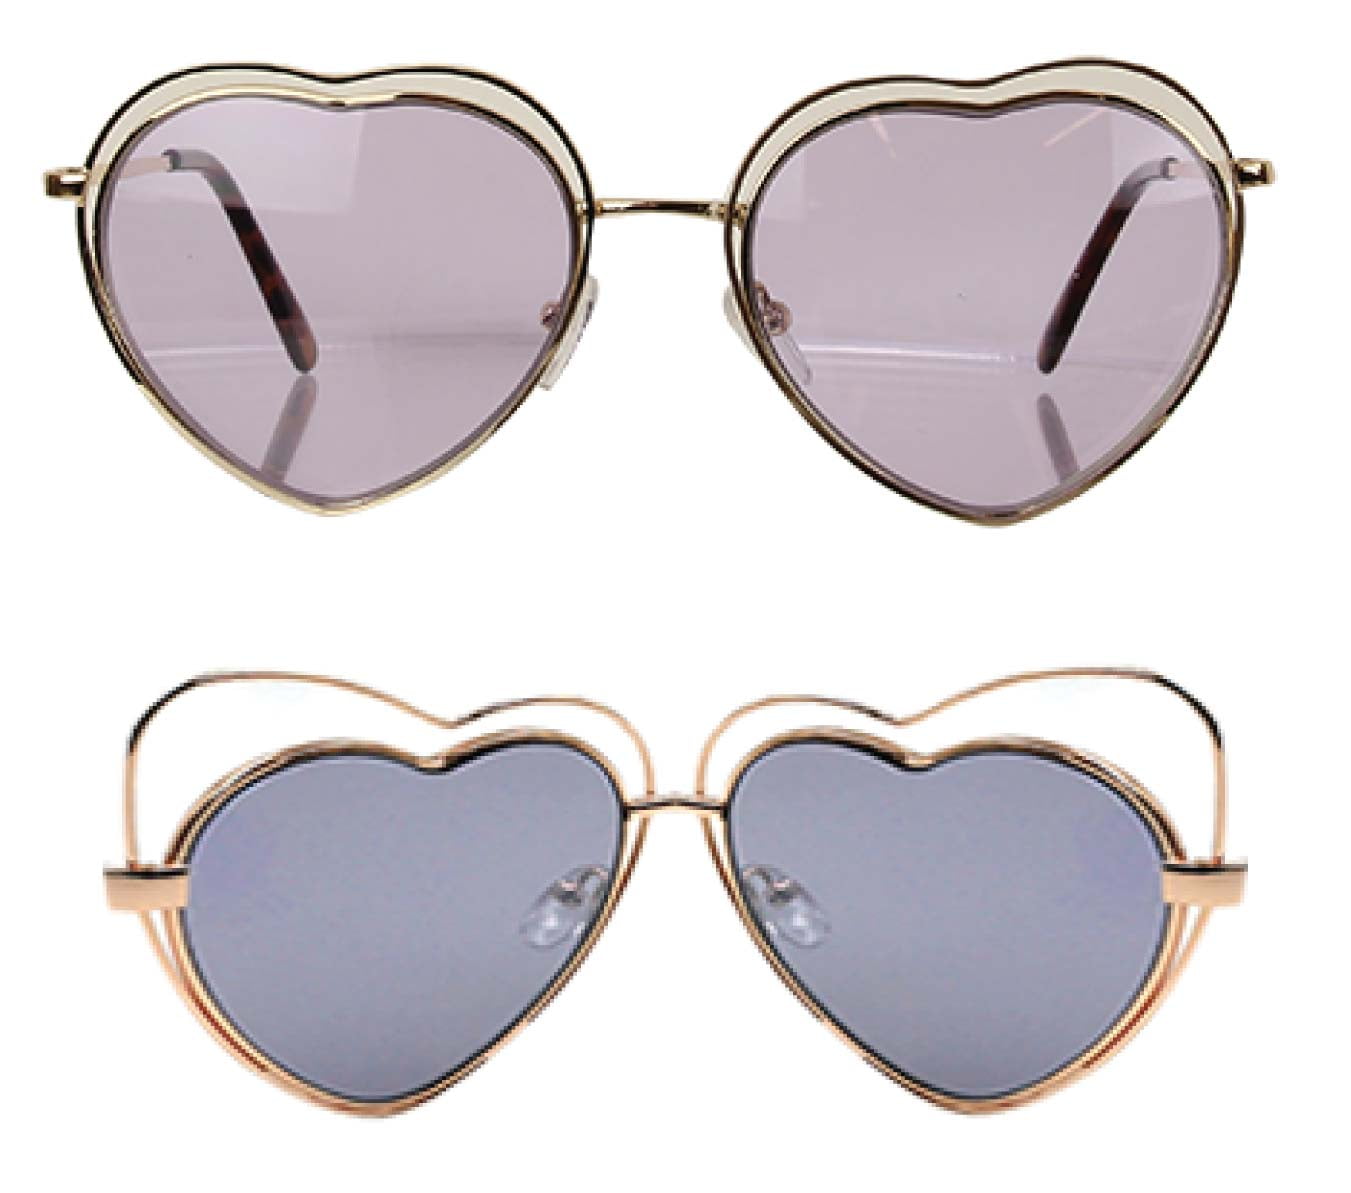 Unisex Sunglasses Thin Frame Fashion Girls Children Heart Shaped Glasses Gift 